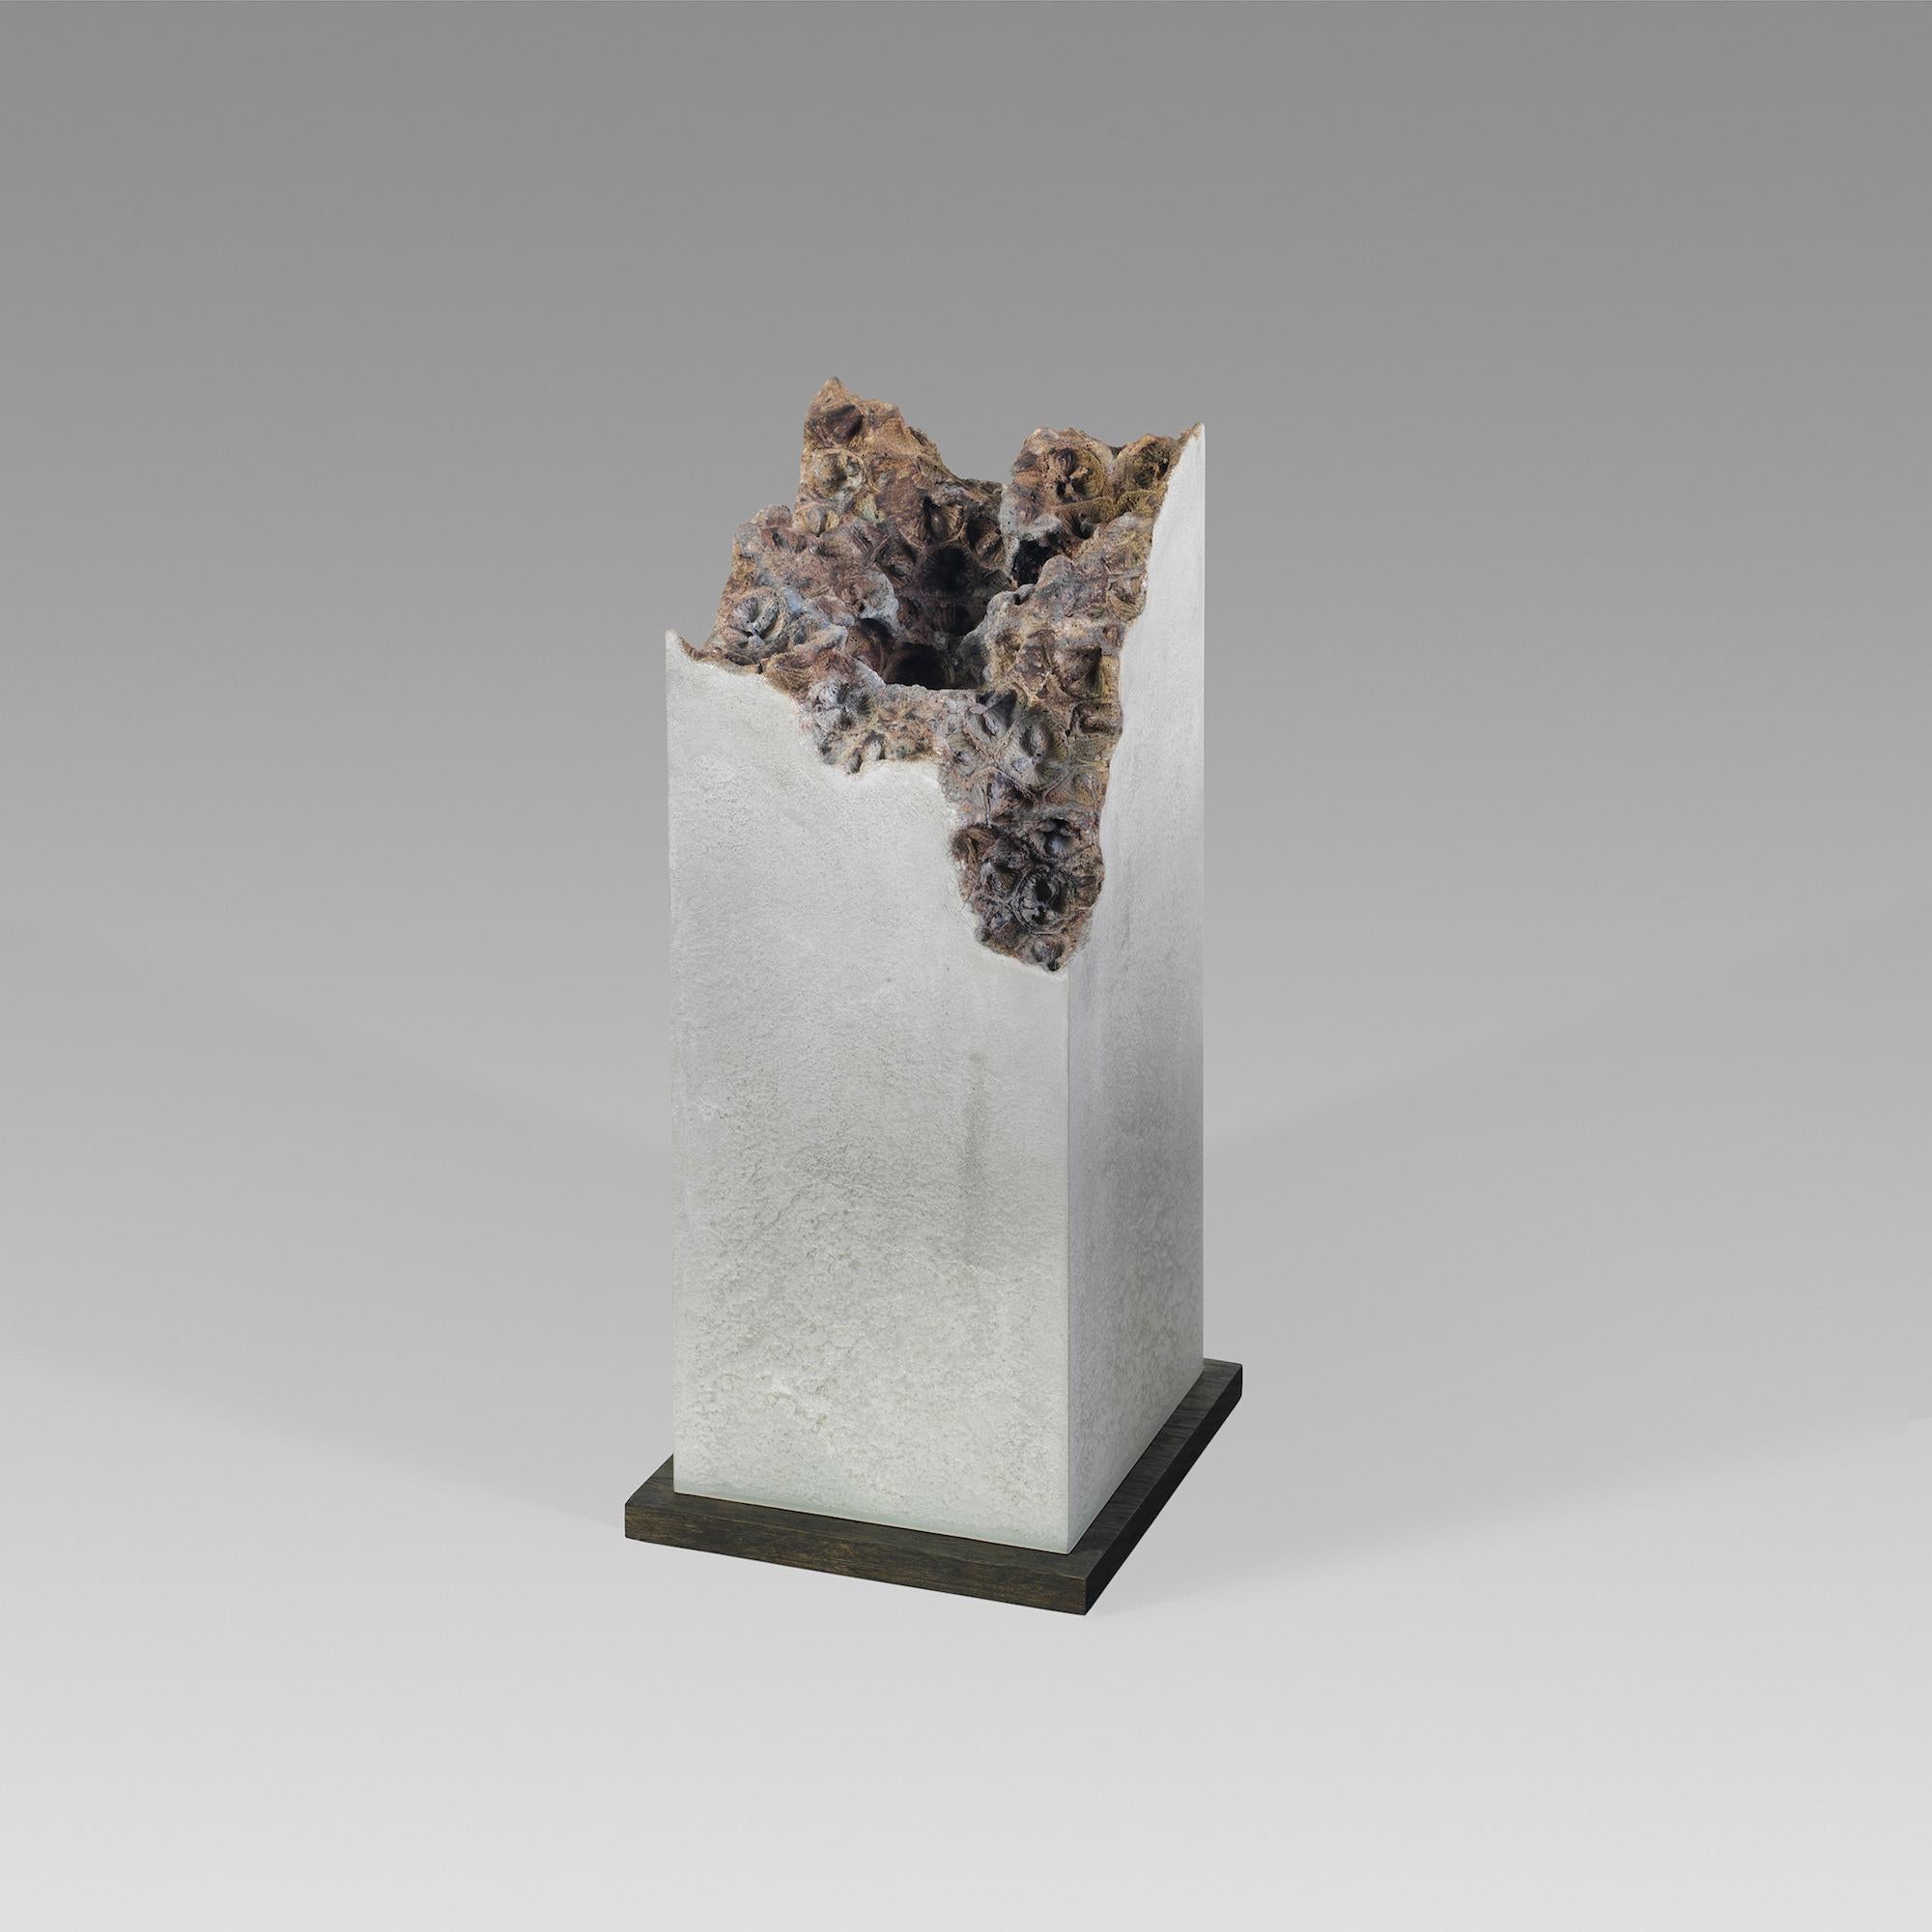 Traces VI est une sculpture en béton unique réalisée par le sculpteur anglais contemporain Oliver Ashworth-Martin. Ses dimensions sont les suivantes  32 × 13 × 13 cm (12.6 × 5.1 × 5.1 in).
Cette œuvre est signée par l'artiste et accompagnée d'un